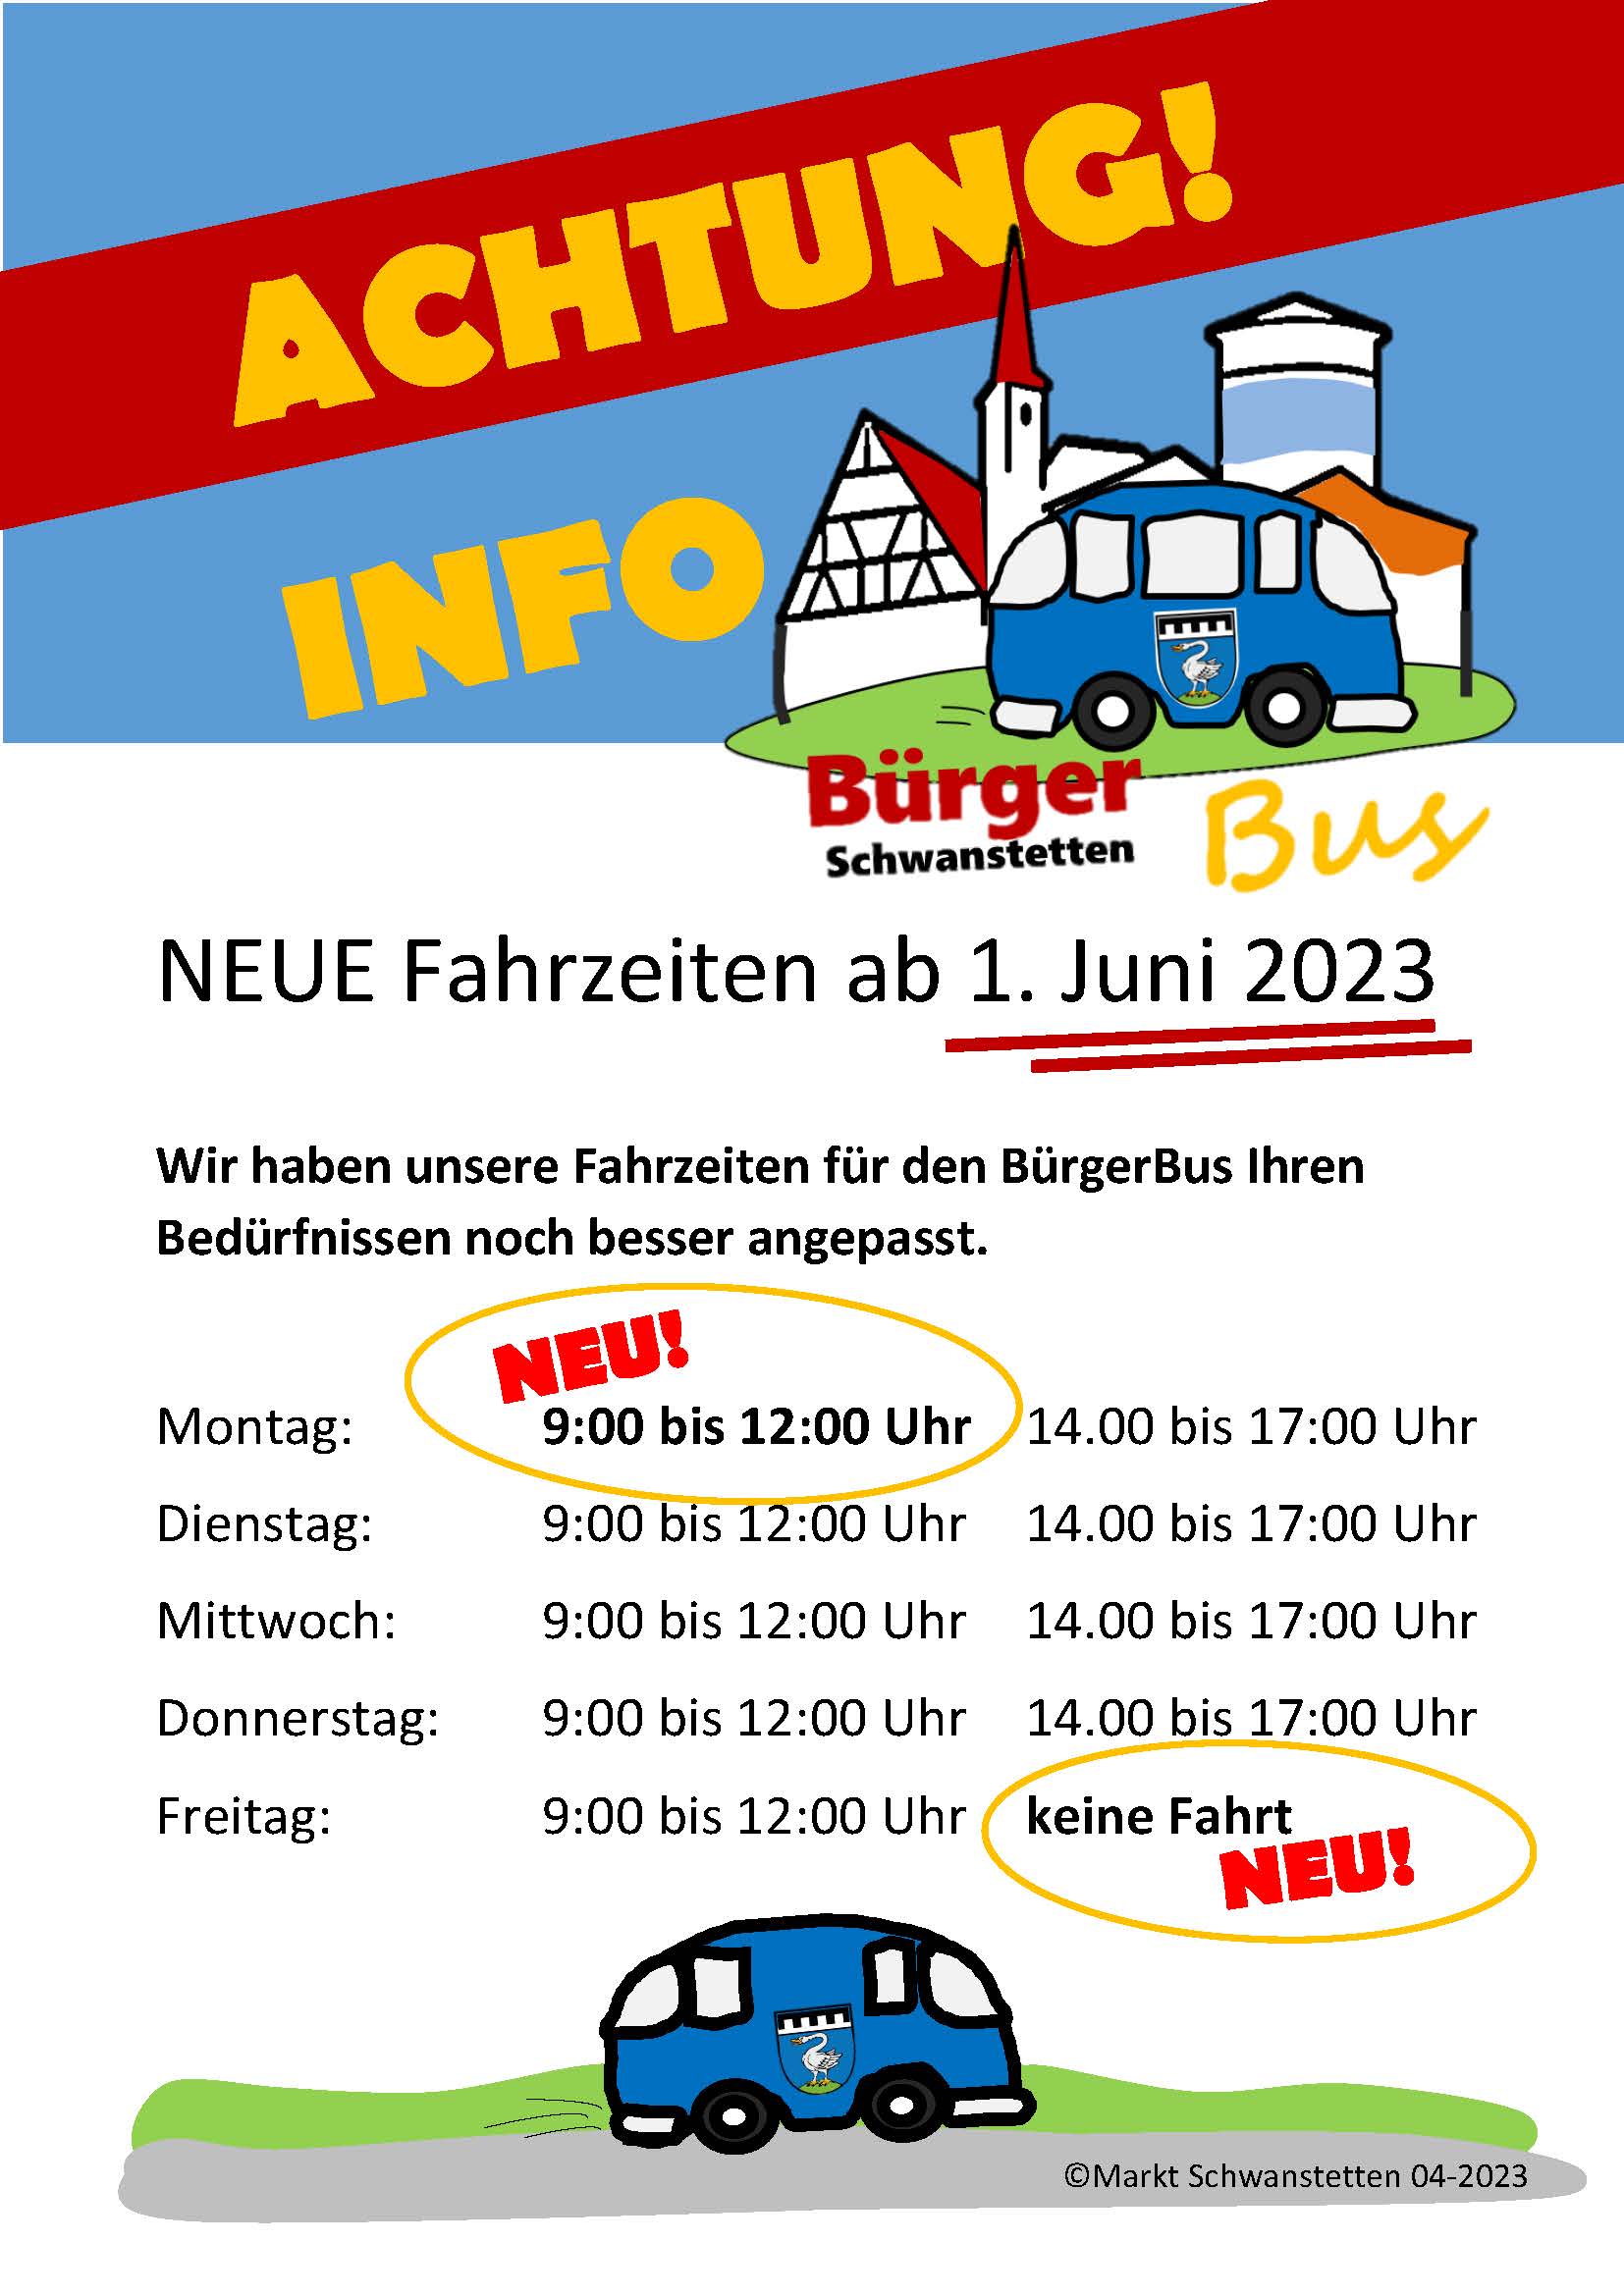  Ein Plakat mit den geänderten Fahrzeiten des Bürgerbus ab dem 1. Juni 2023. 